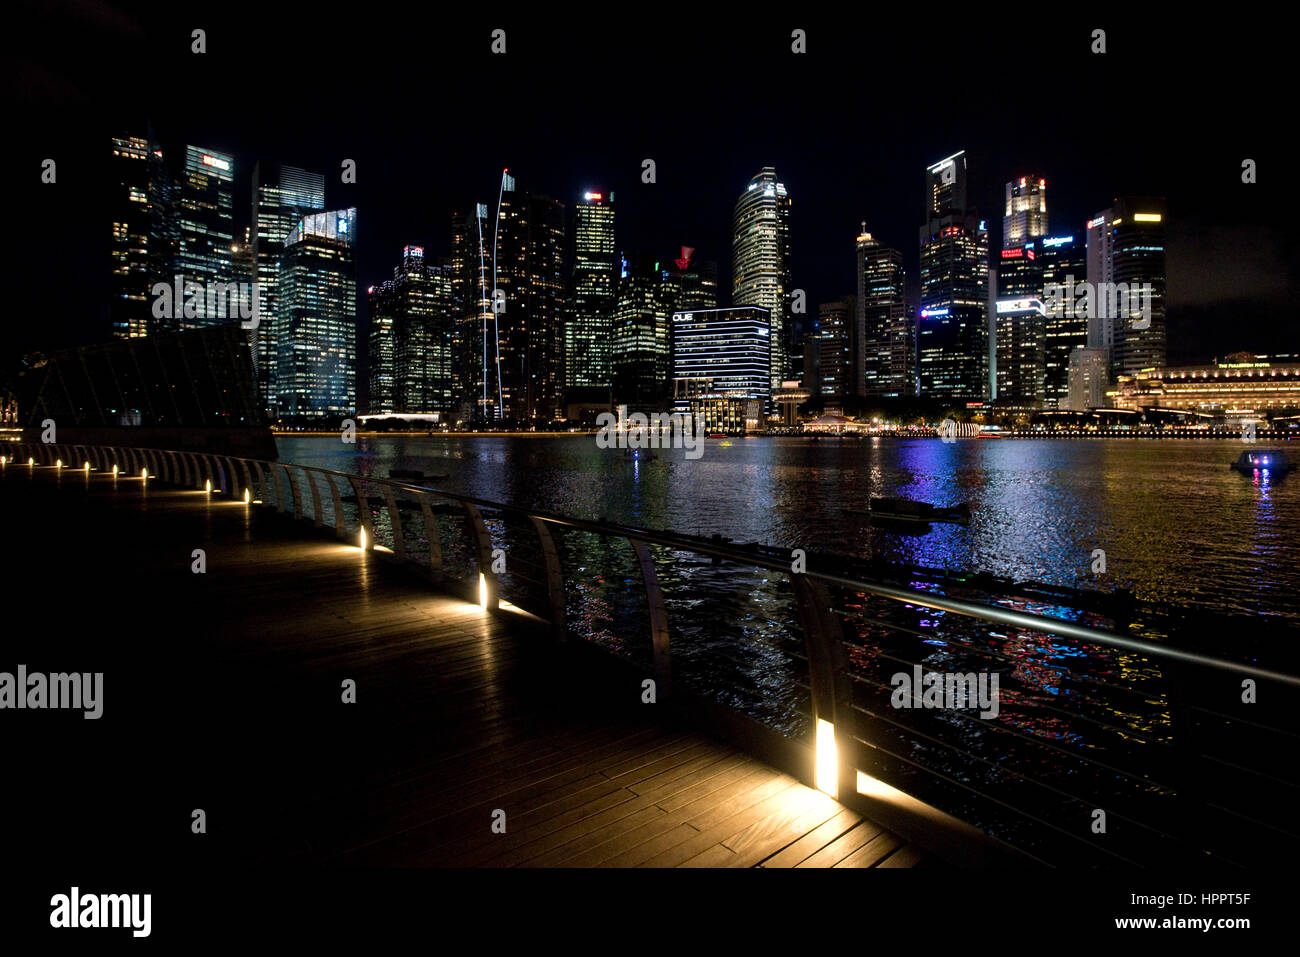 Un paesaggio urbano vista di notte dei blocchi a torre e grattacieli del quartiere centrale degli affari (CBD) o della zona centrale di Singapore. Foto Stock